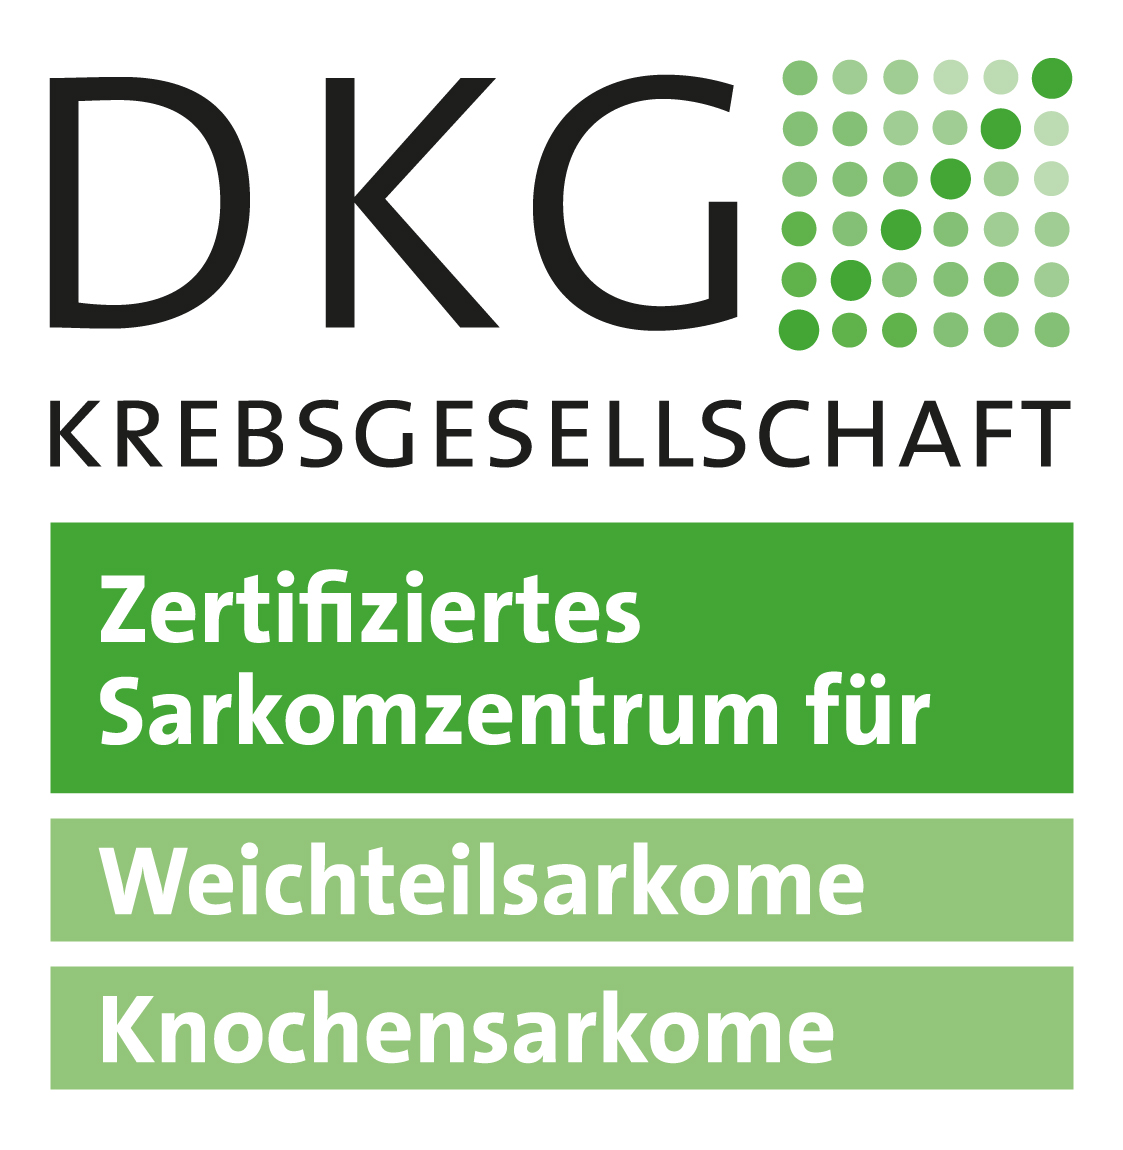 Zertifizierung als Sarkomzentrum für Weichteilsarkome der Deutschen Krebsgesellschaft (DKG) 